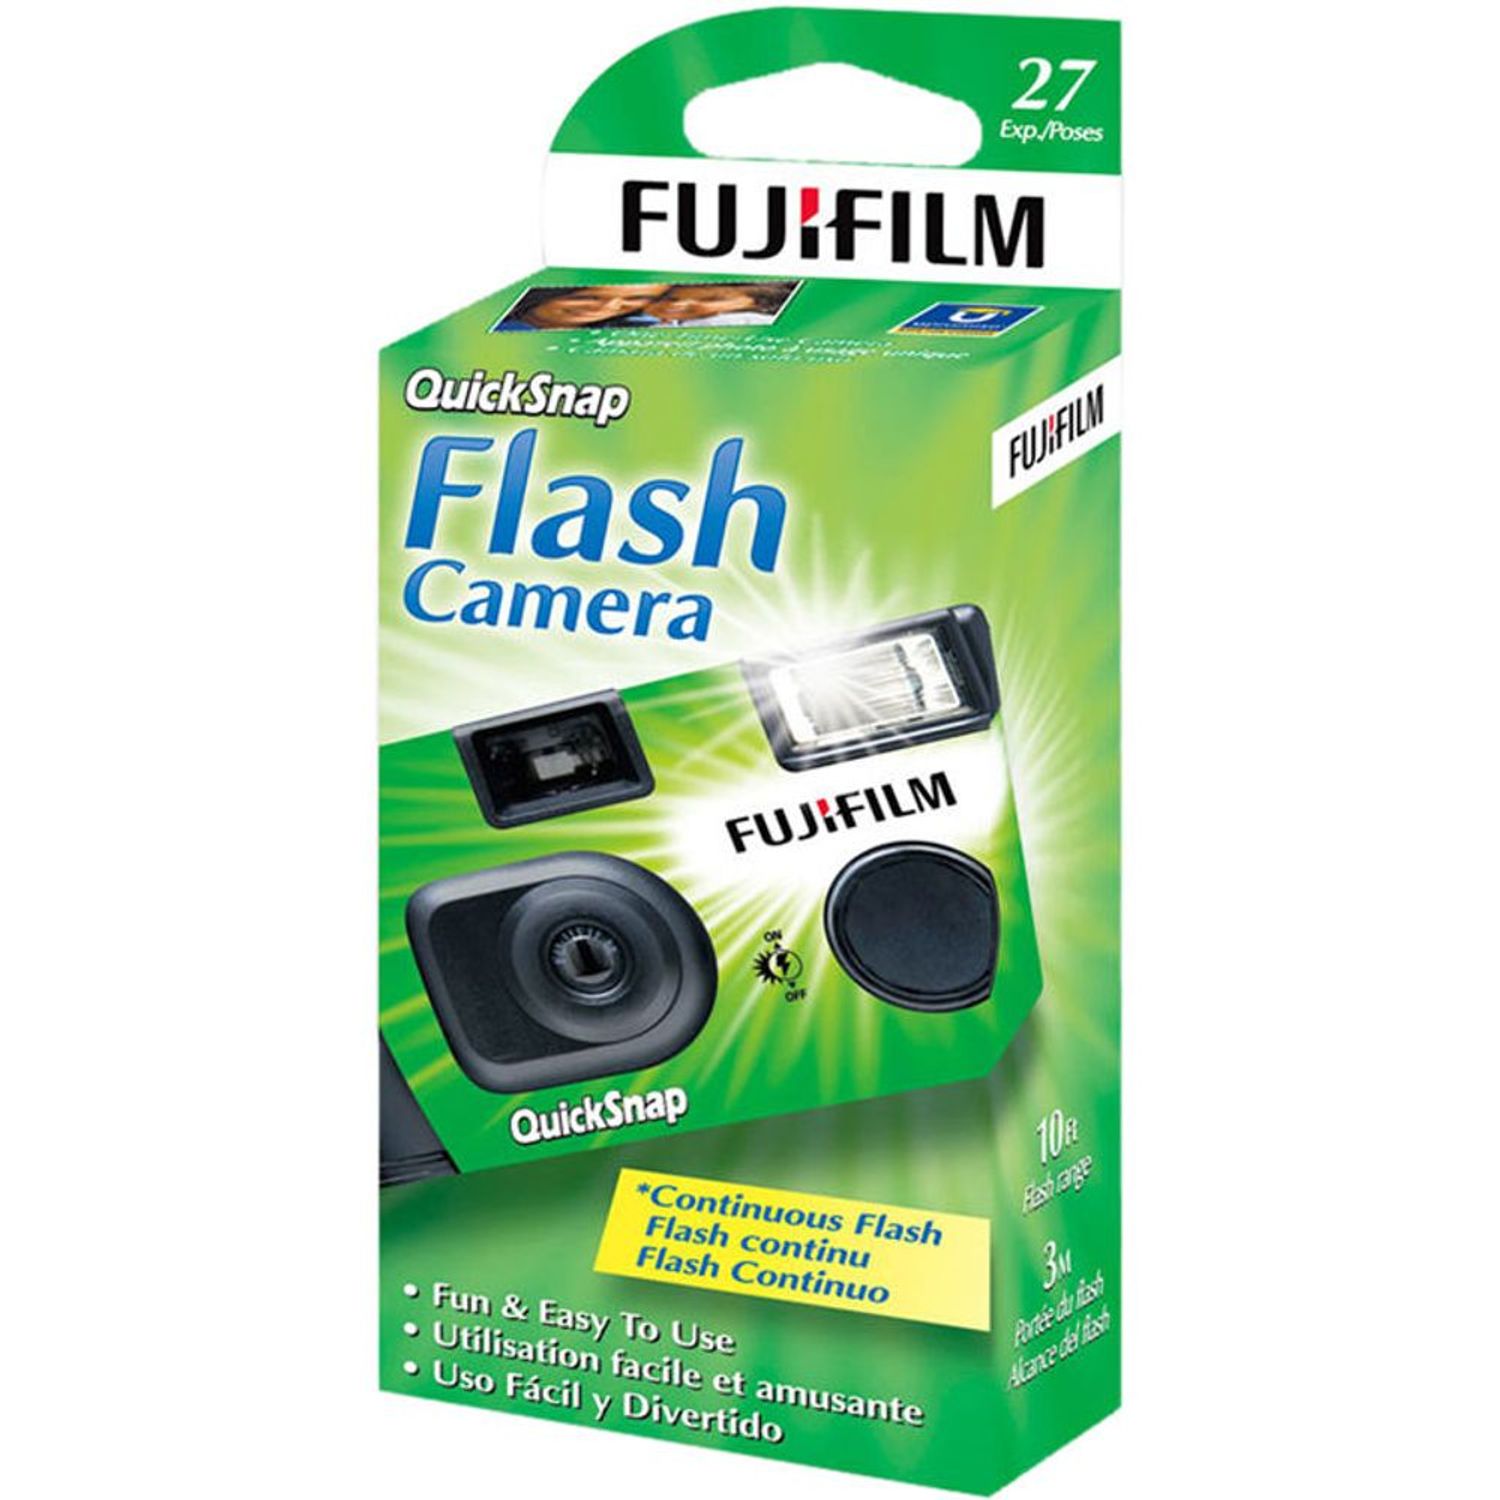 Fujifilm Quicksnap Flash 400 desechable de único (27 exposiciones) Oechsle - Oechsle